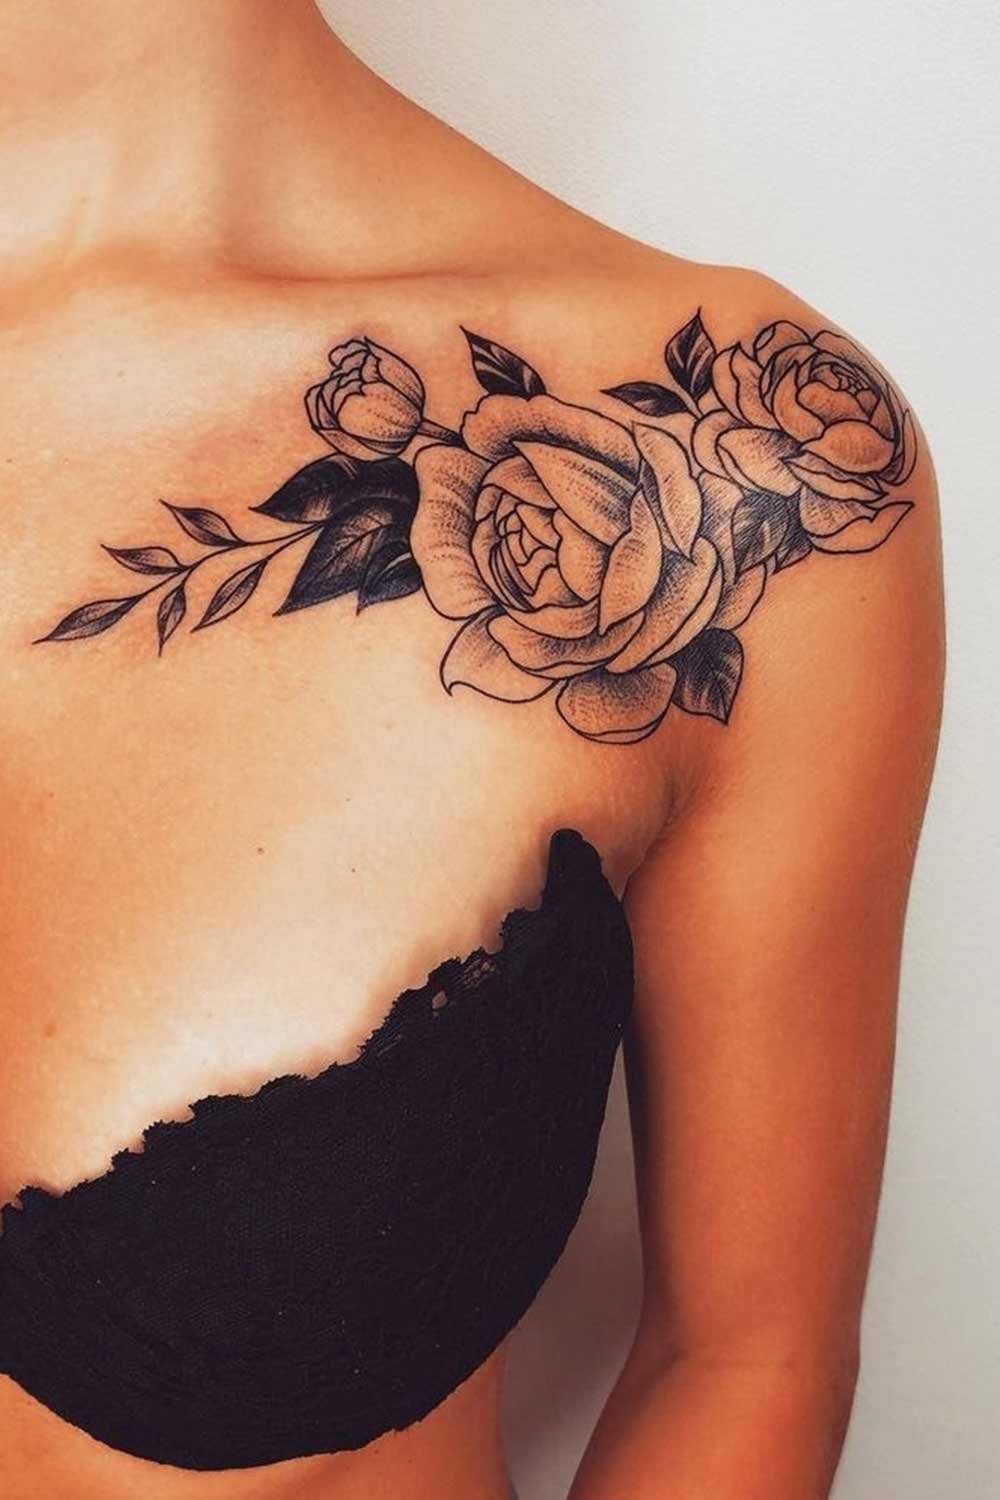 1-Tatuagem-floral-no-ombro-@goodtattooclub 